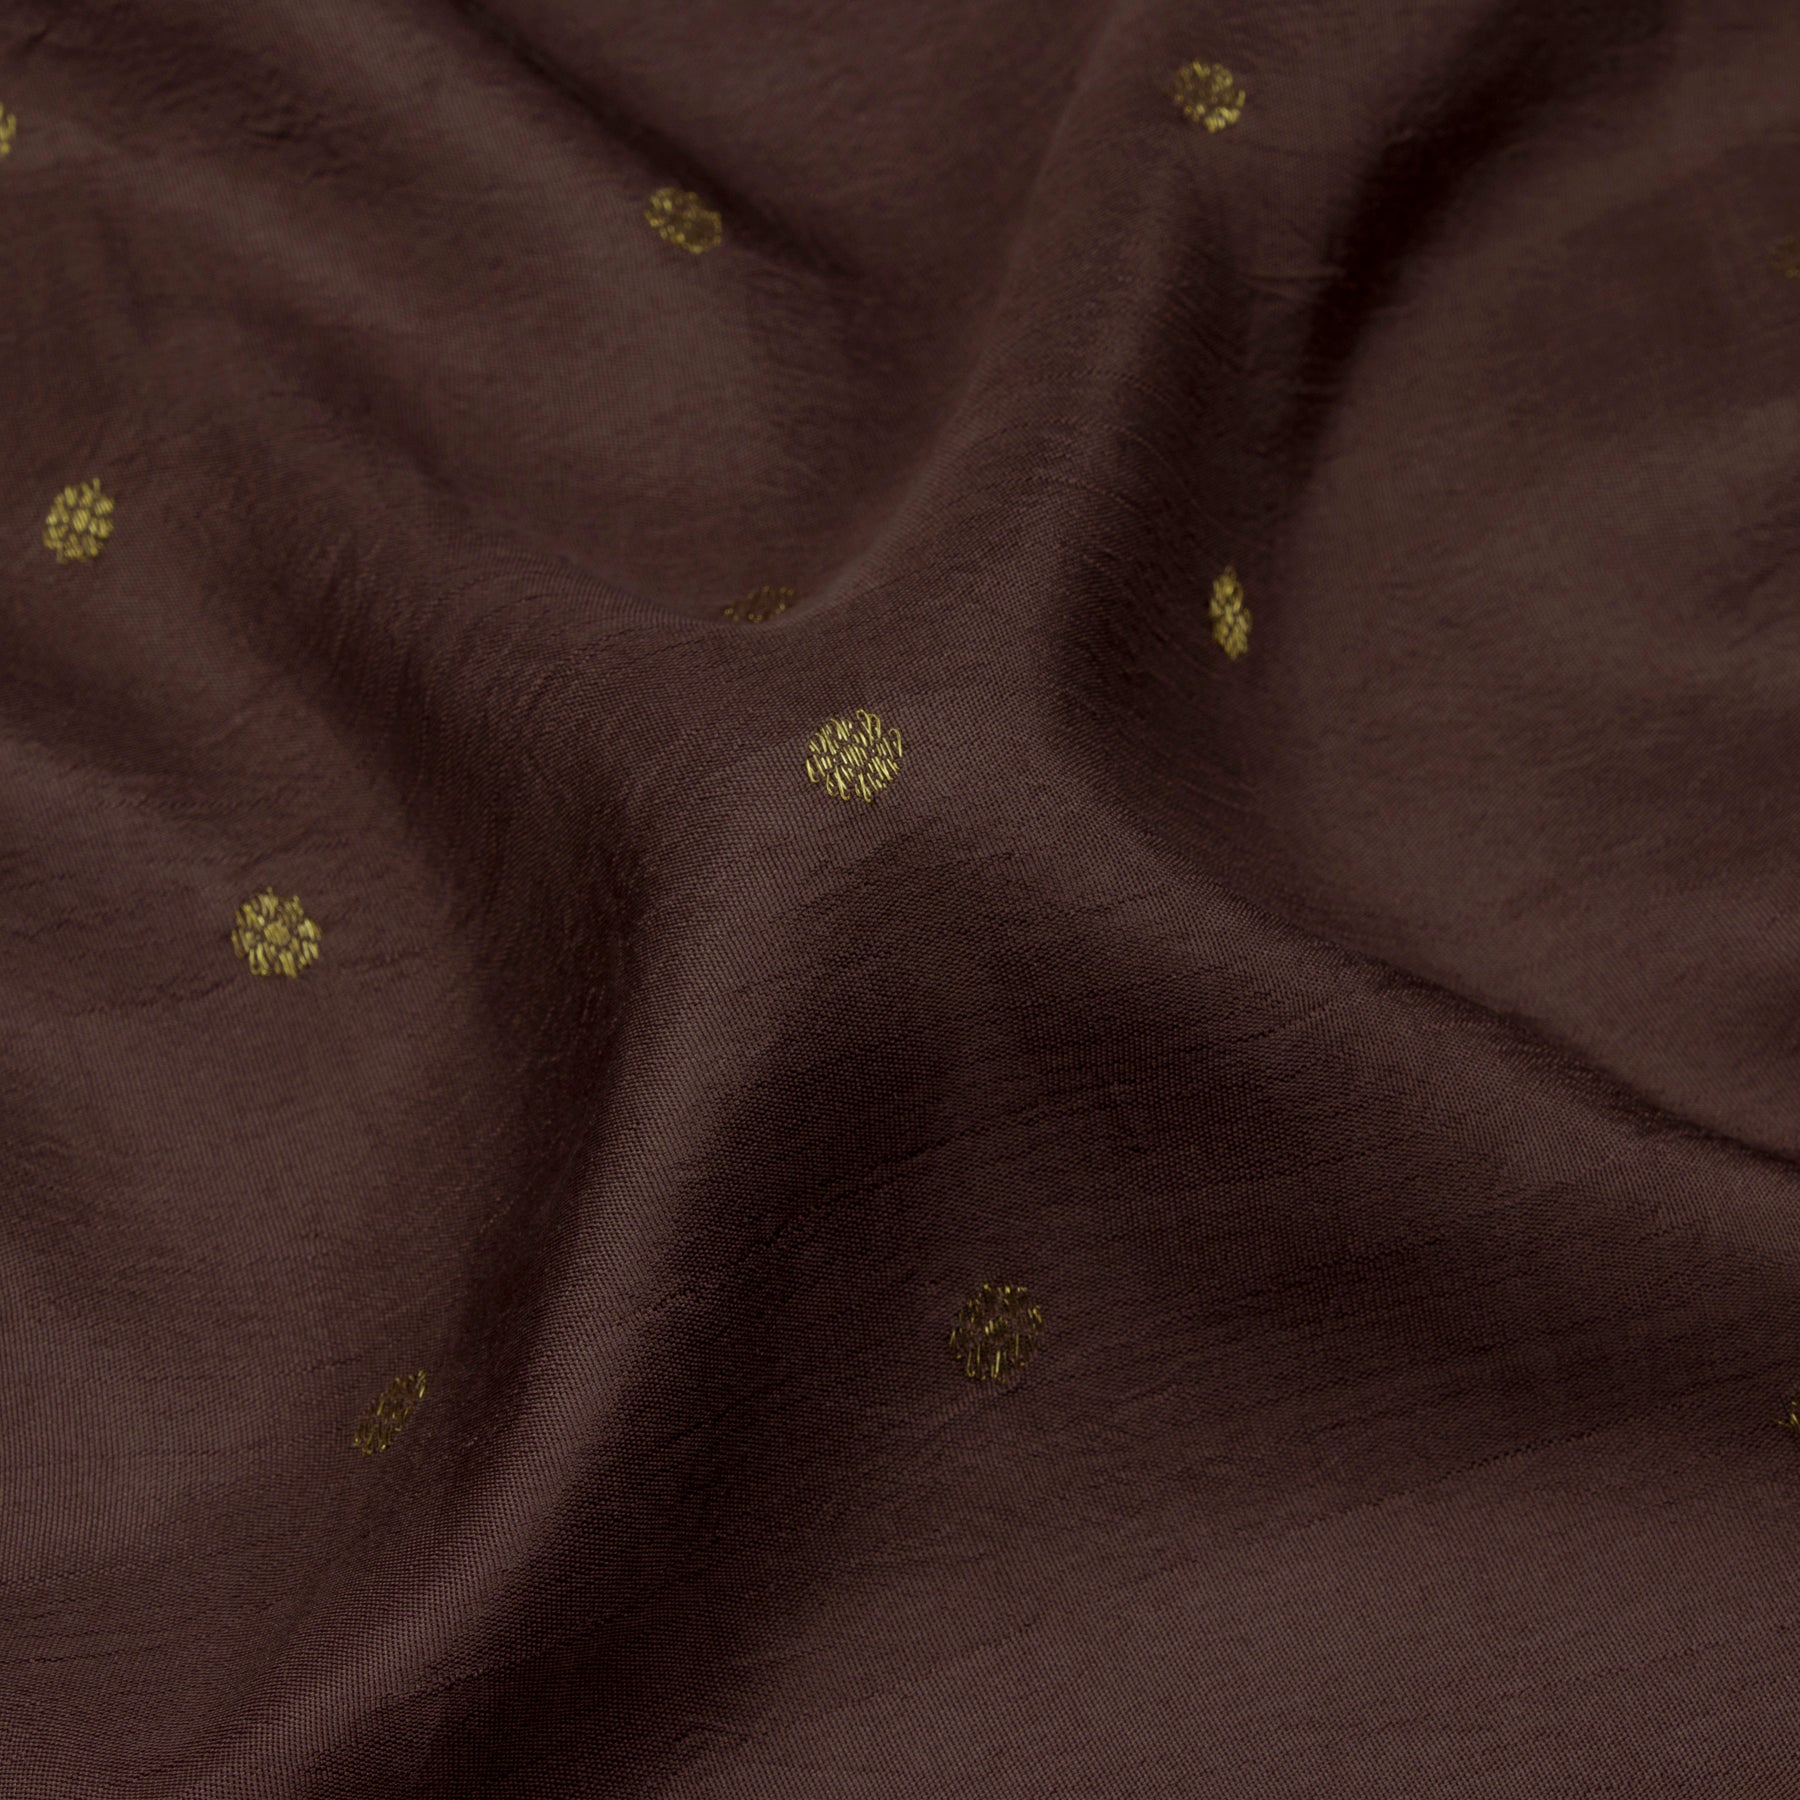 Kanakavalli Kanjivaram Silk Sari 21-040-HS001-00404 - Fabric View